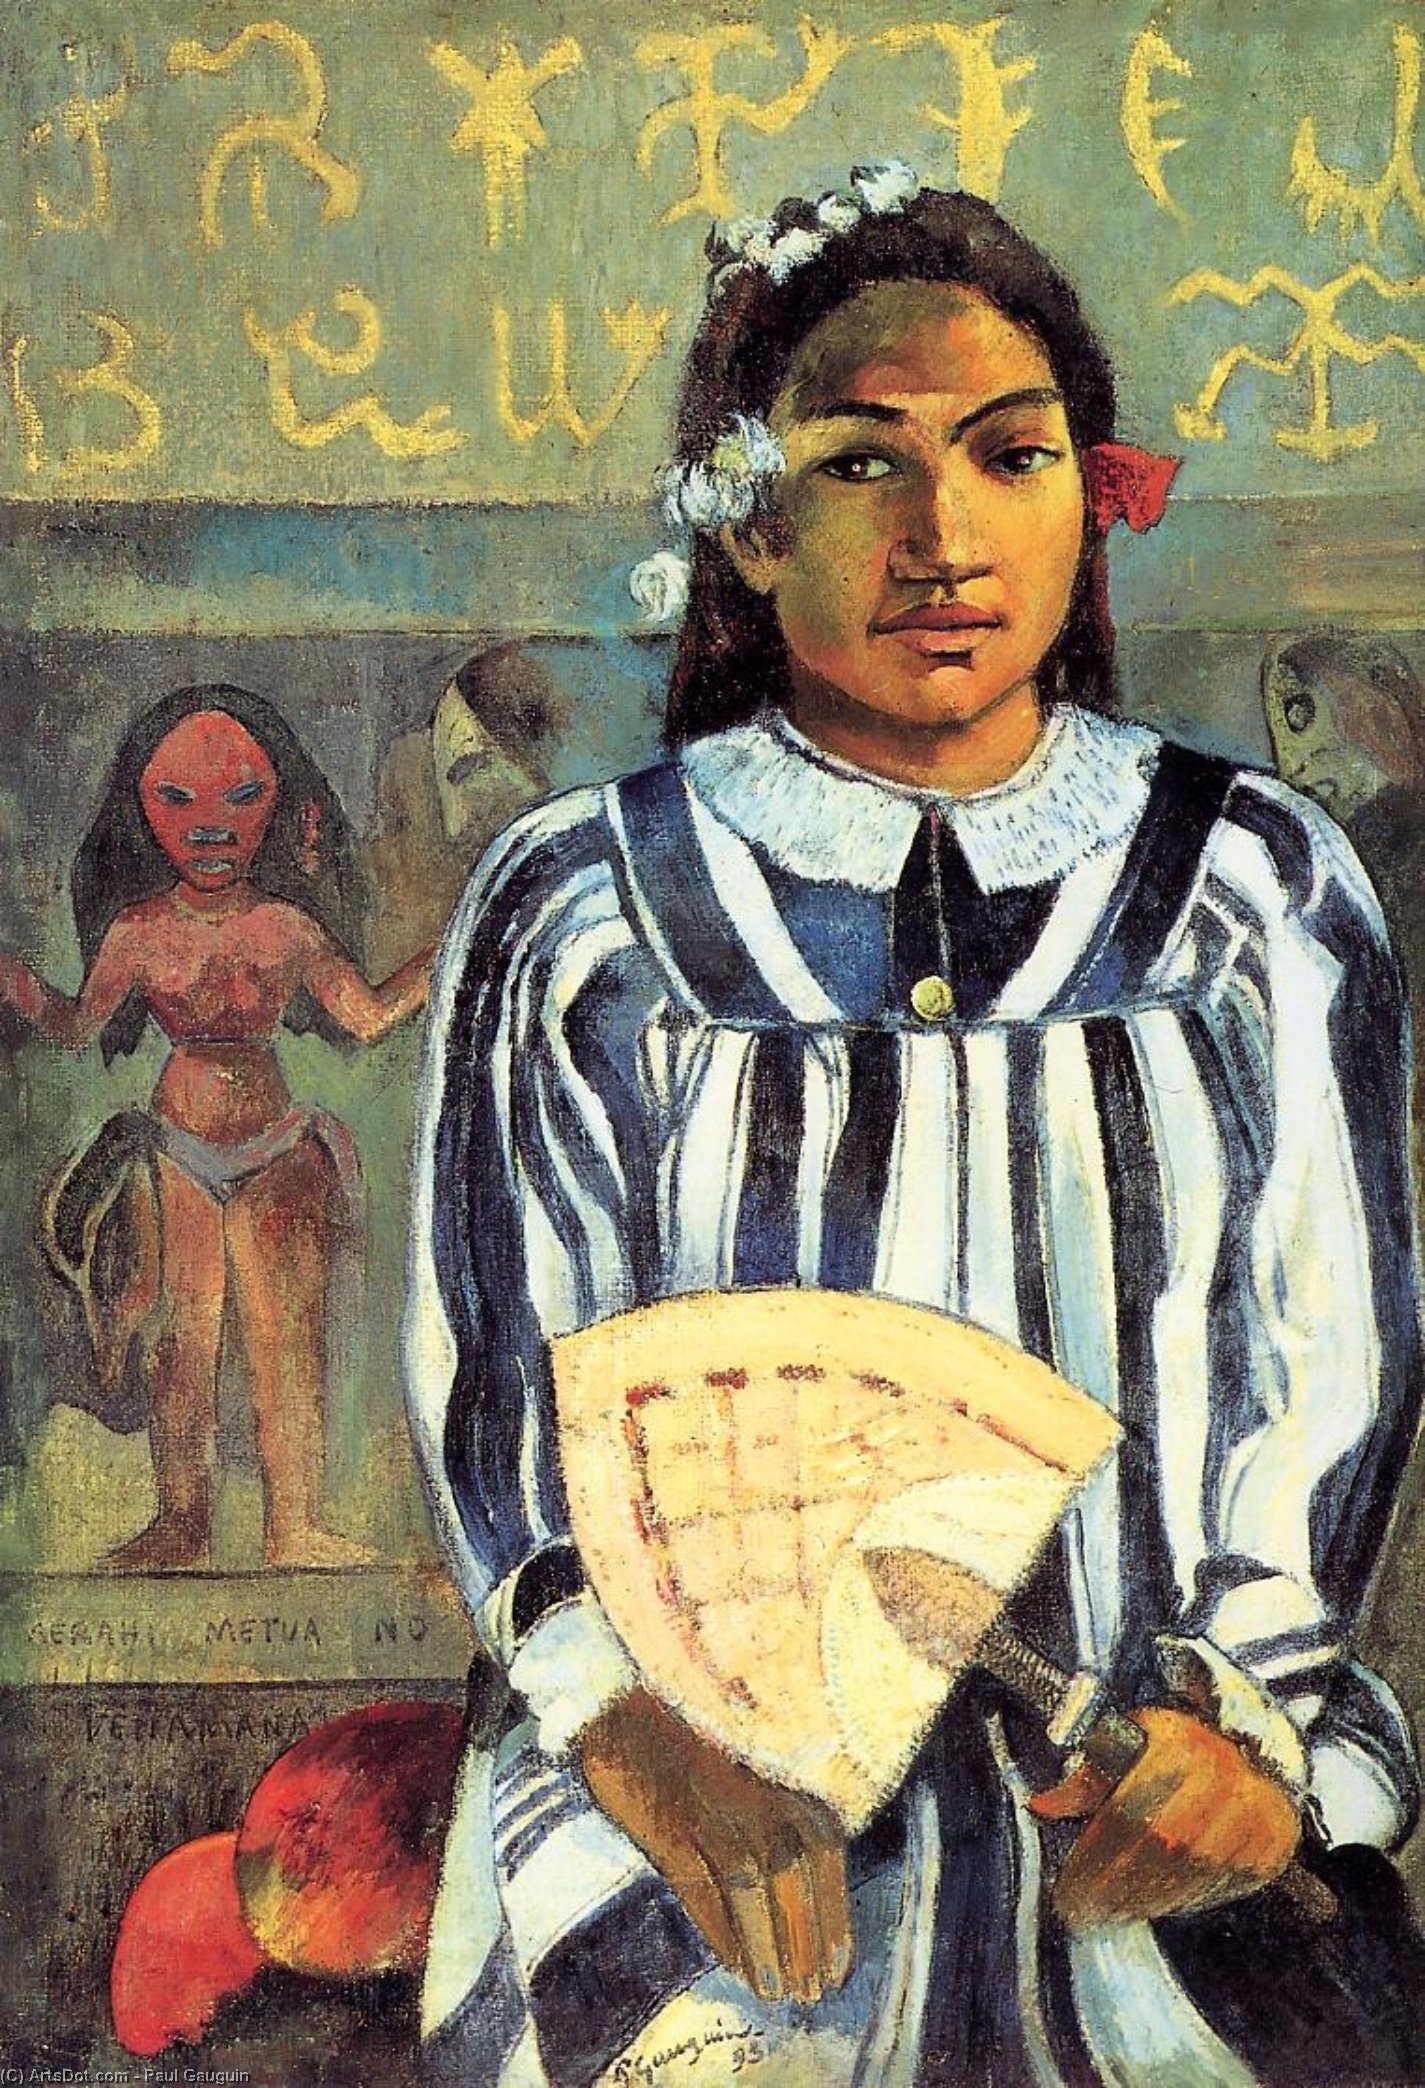 WikiOO.org - Encyclopedia of Fine Arts - Maalaus, taideteos Paul Gauguin - Marahi Metua no Tehamana (also known as Tehamana Has Many Ancestors)